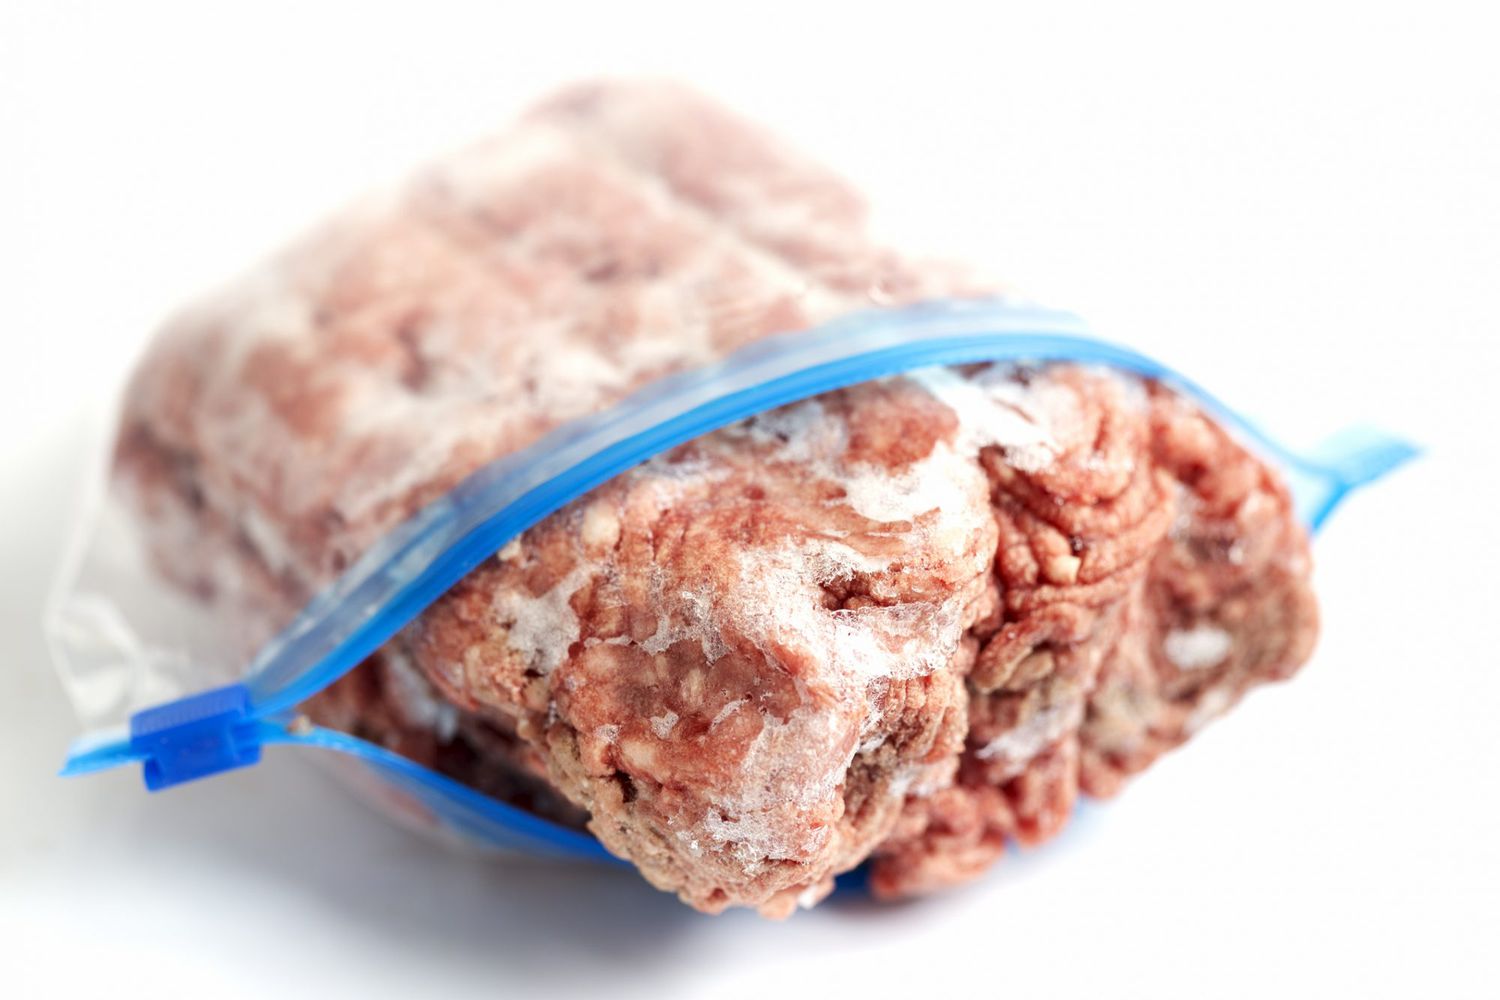 frozen block of ground beef in a plastic ziplock bag